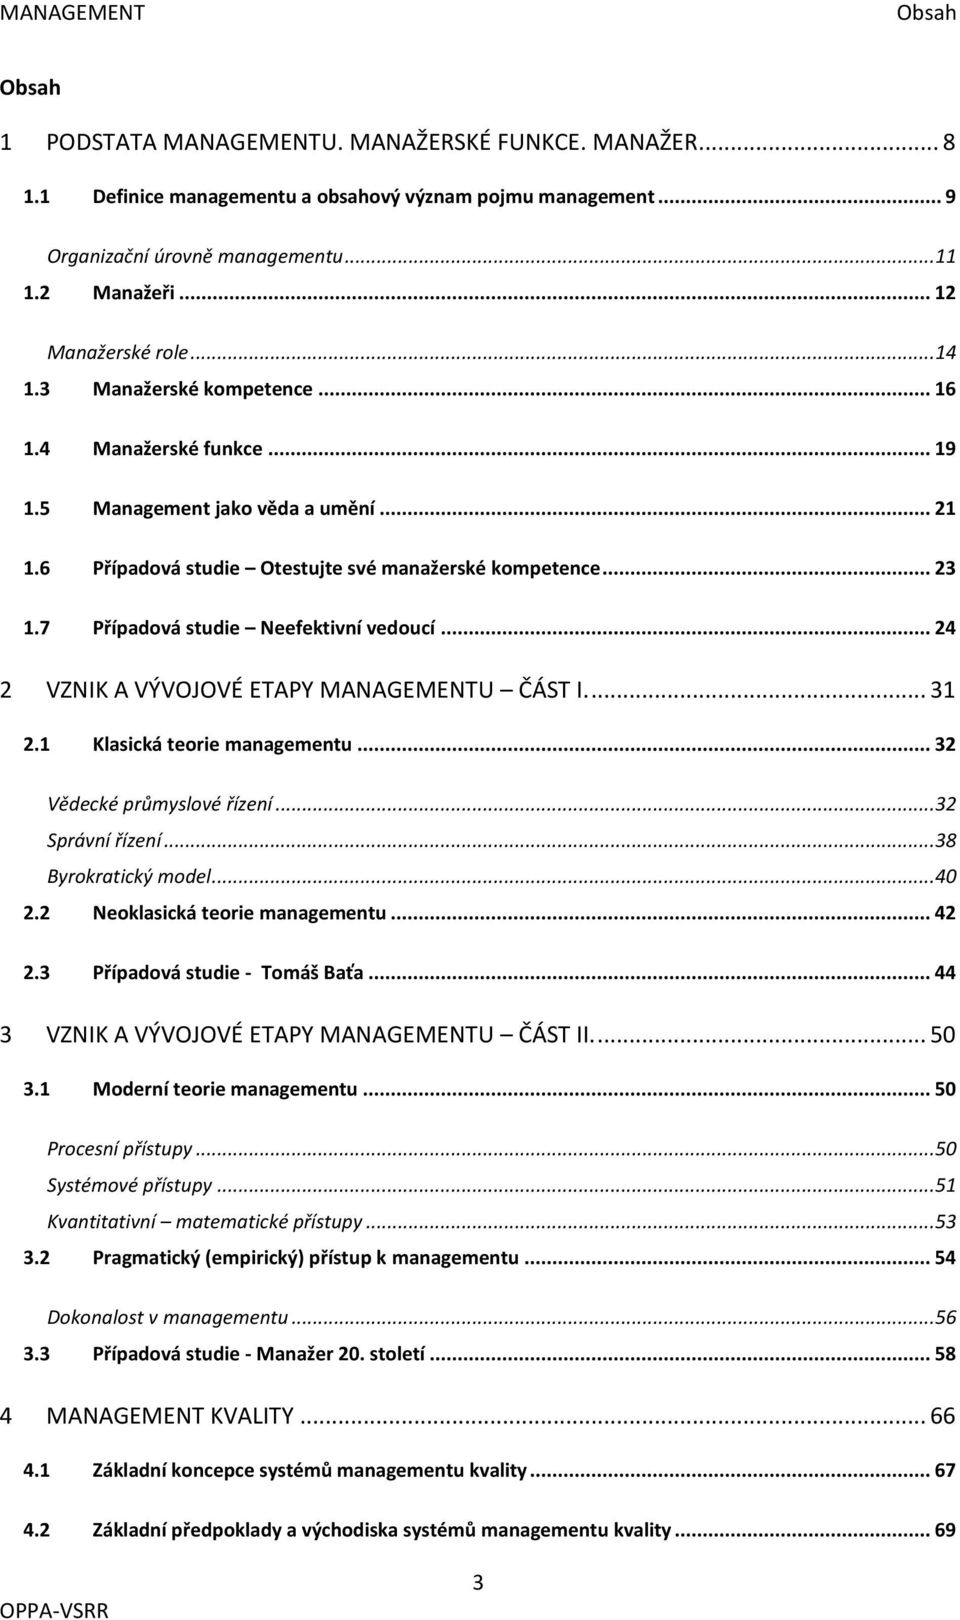 7 Případová studie Neefektivní vedoucí... 24 2 VZNIK A VÝVOJOVÉ ETAPY MANAGEMENTU ČÁST I.... 31 2.1 Klasická teorie managementu... 32 Vědecké průmyslové řízení... 32 Správní řízení.